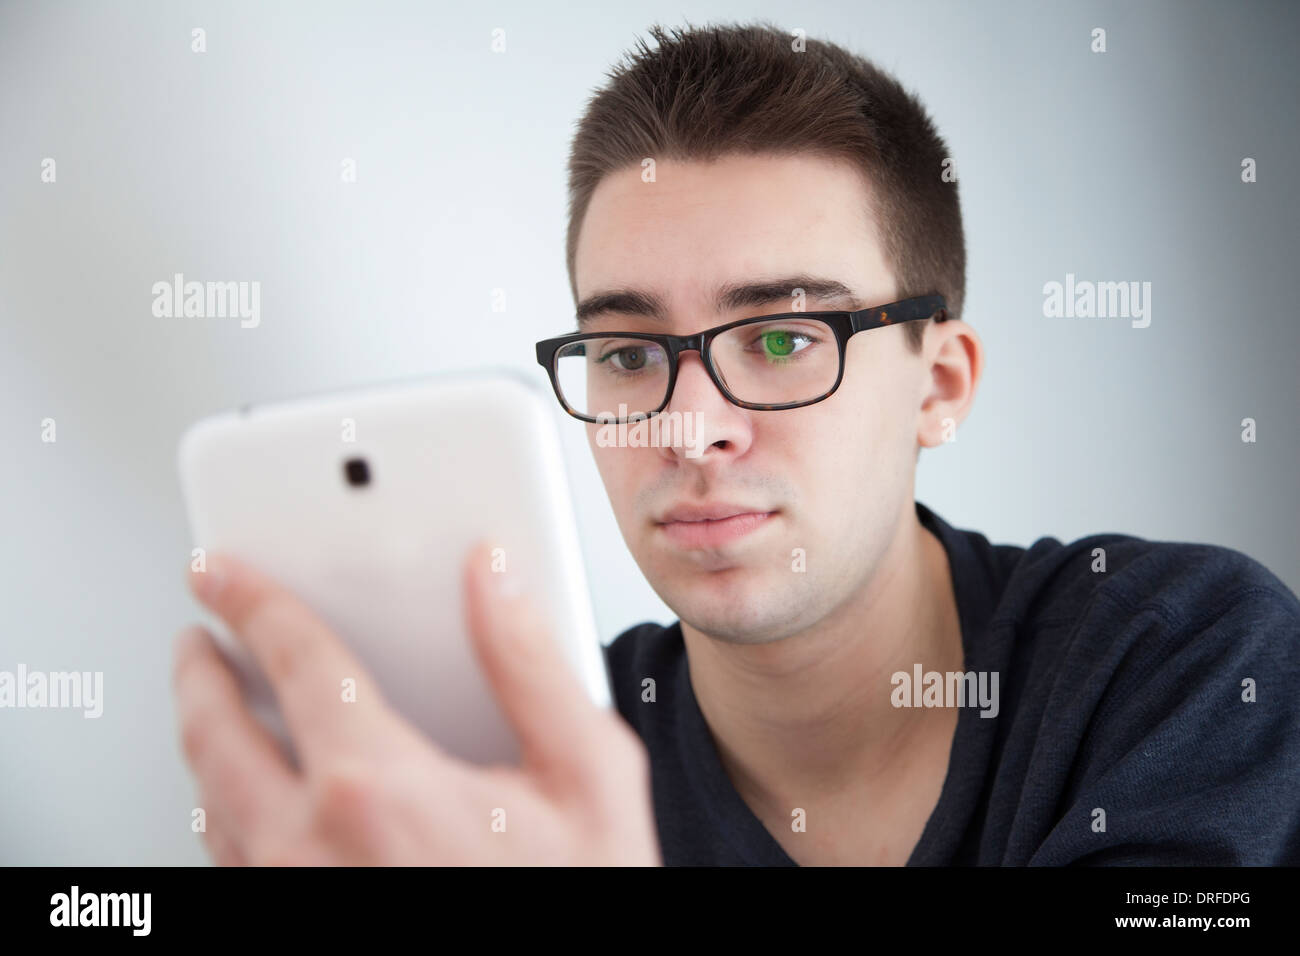 Gut aussehender junger Mann mit Brille, leichte Reflexion. Halten eine weiße digitale-Tablette. Ernsten Ausdruck. Stockfoto